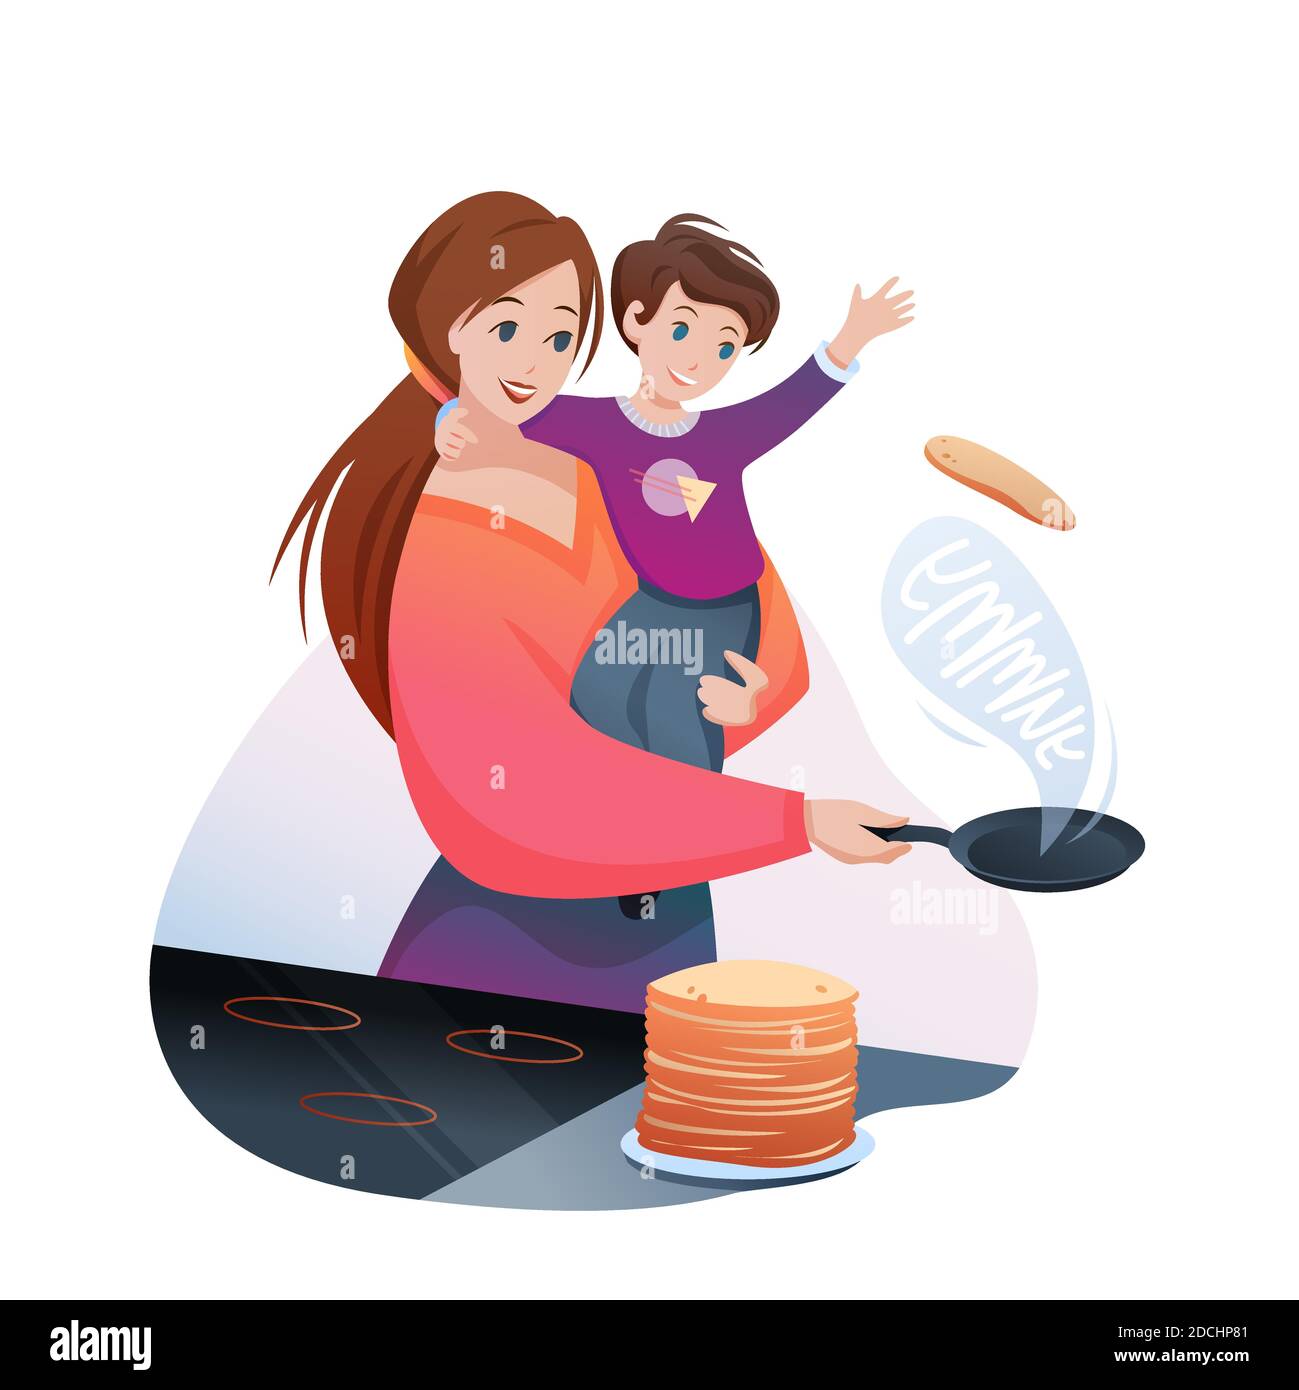 Mère cuisiniers famille petit déjeuner illustration vectorielle, dessin animé plat personnage de maman avec garçon enfant cuisiner crêpes délicieuses isolées sur blanc Illustration de Vecteur